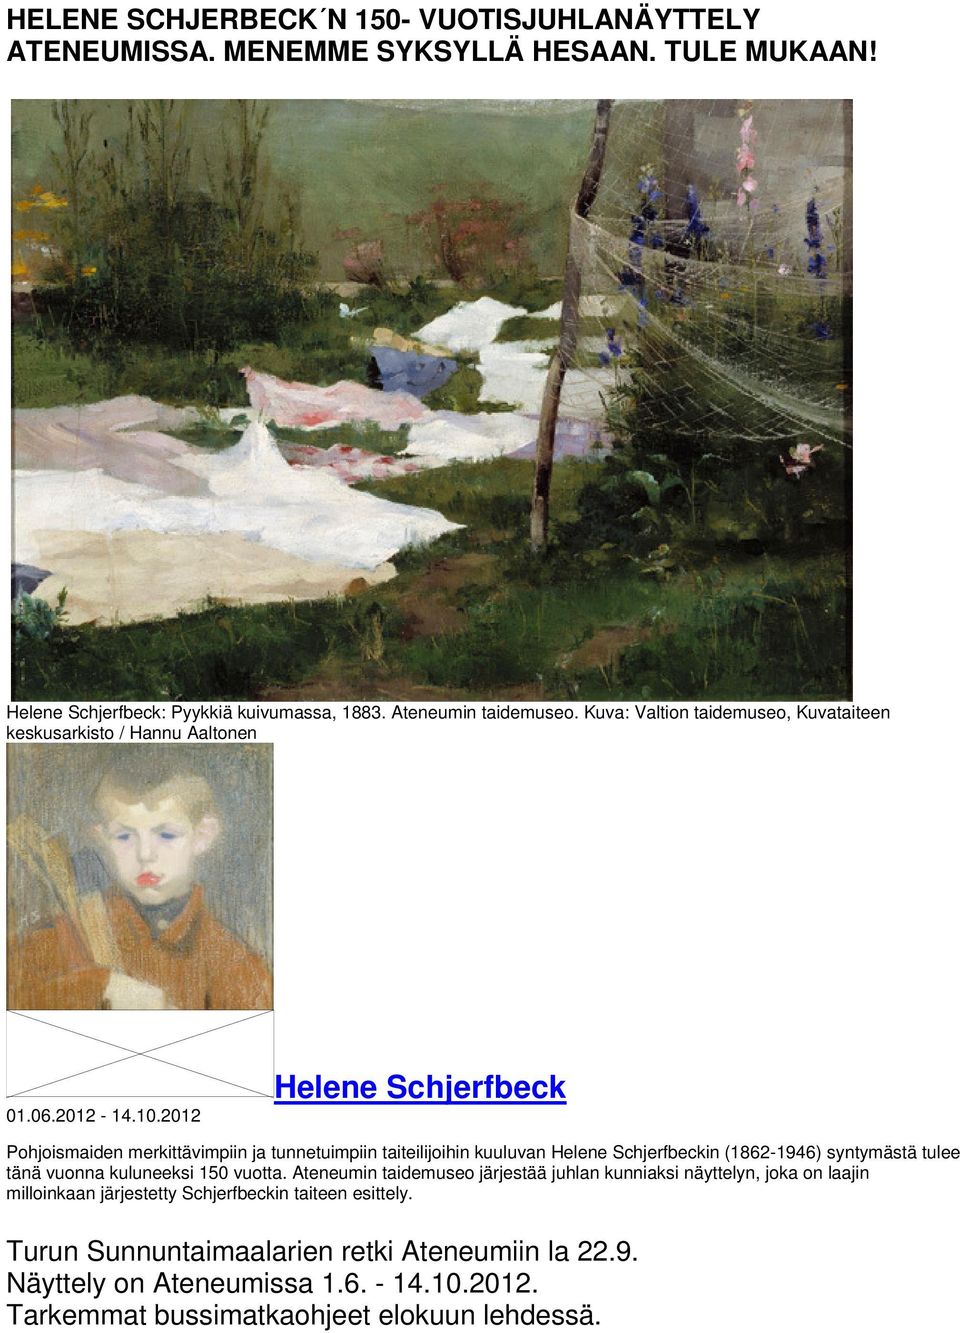 2012 Helene Schjerfbeck Pohjoismaiden merkittävimpiin ja tunnetuimpiin taiteilijoihin kuuluvan Helene Schjerfbeckin (1862-1946) syntymästä tulee tänä vuonna kuluneeksi 150